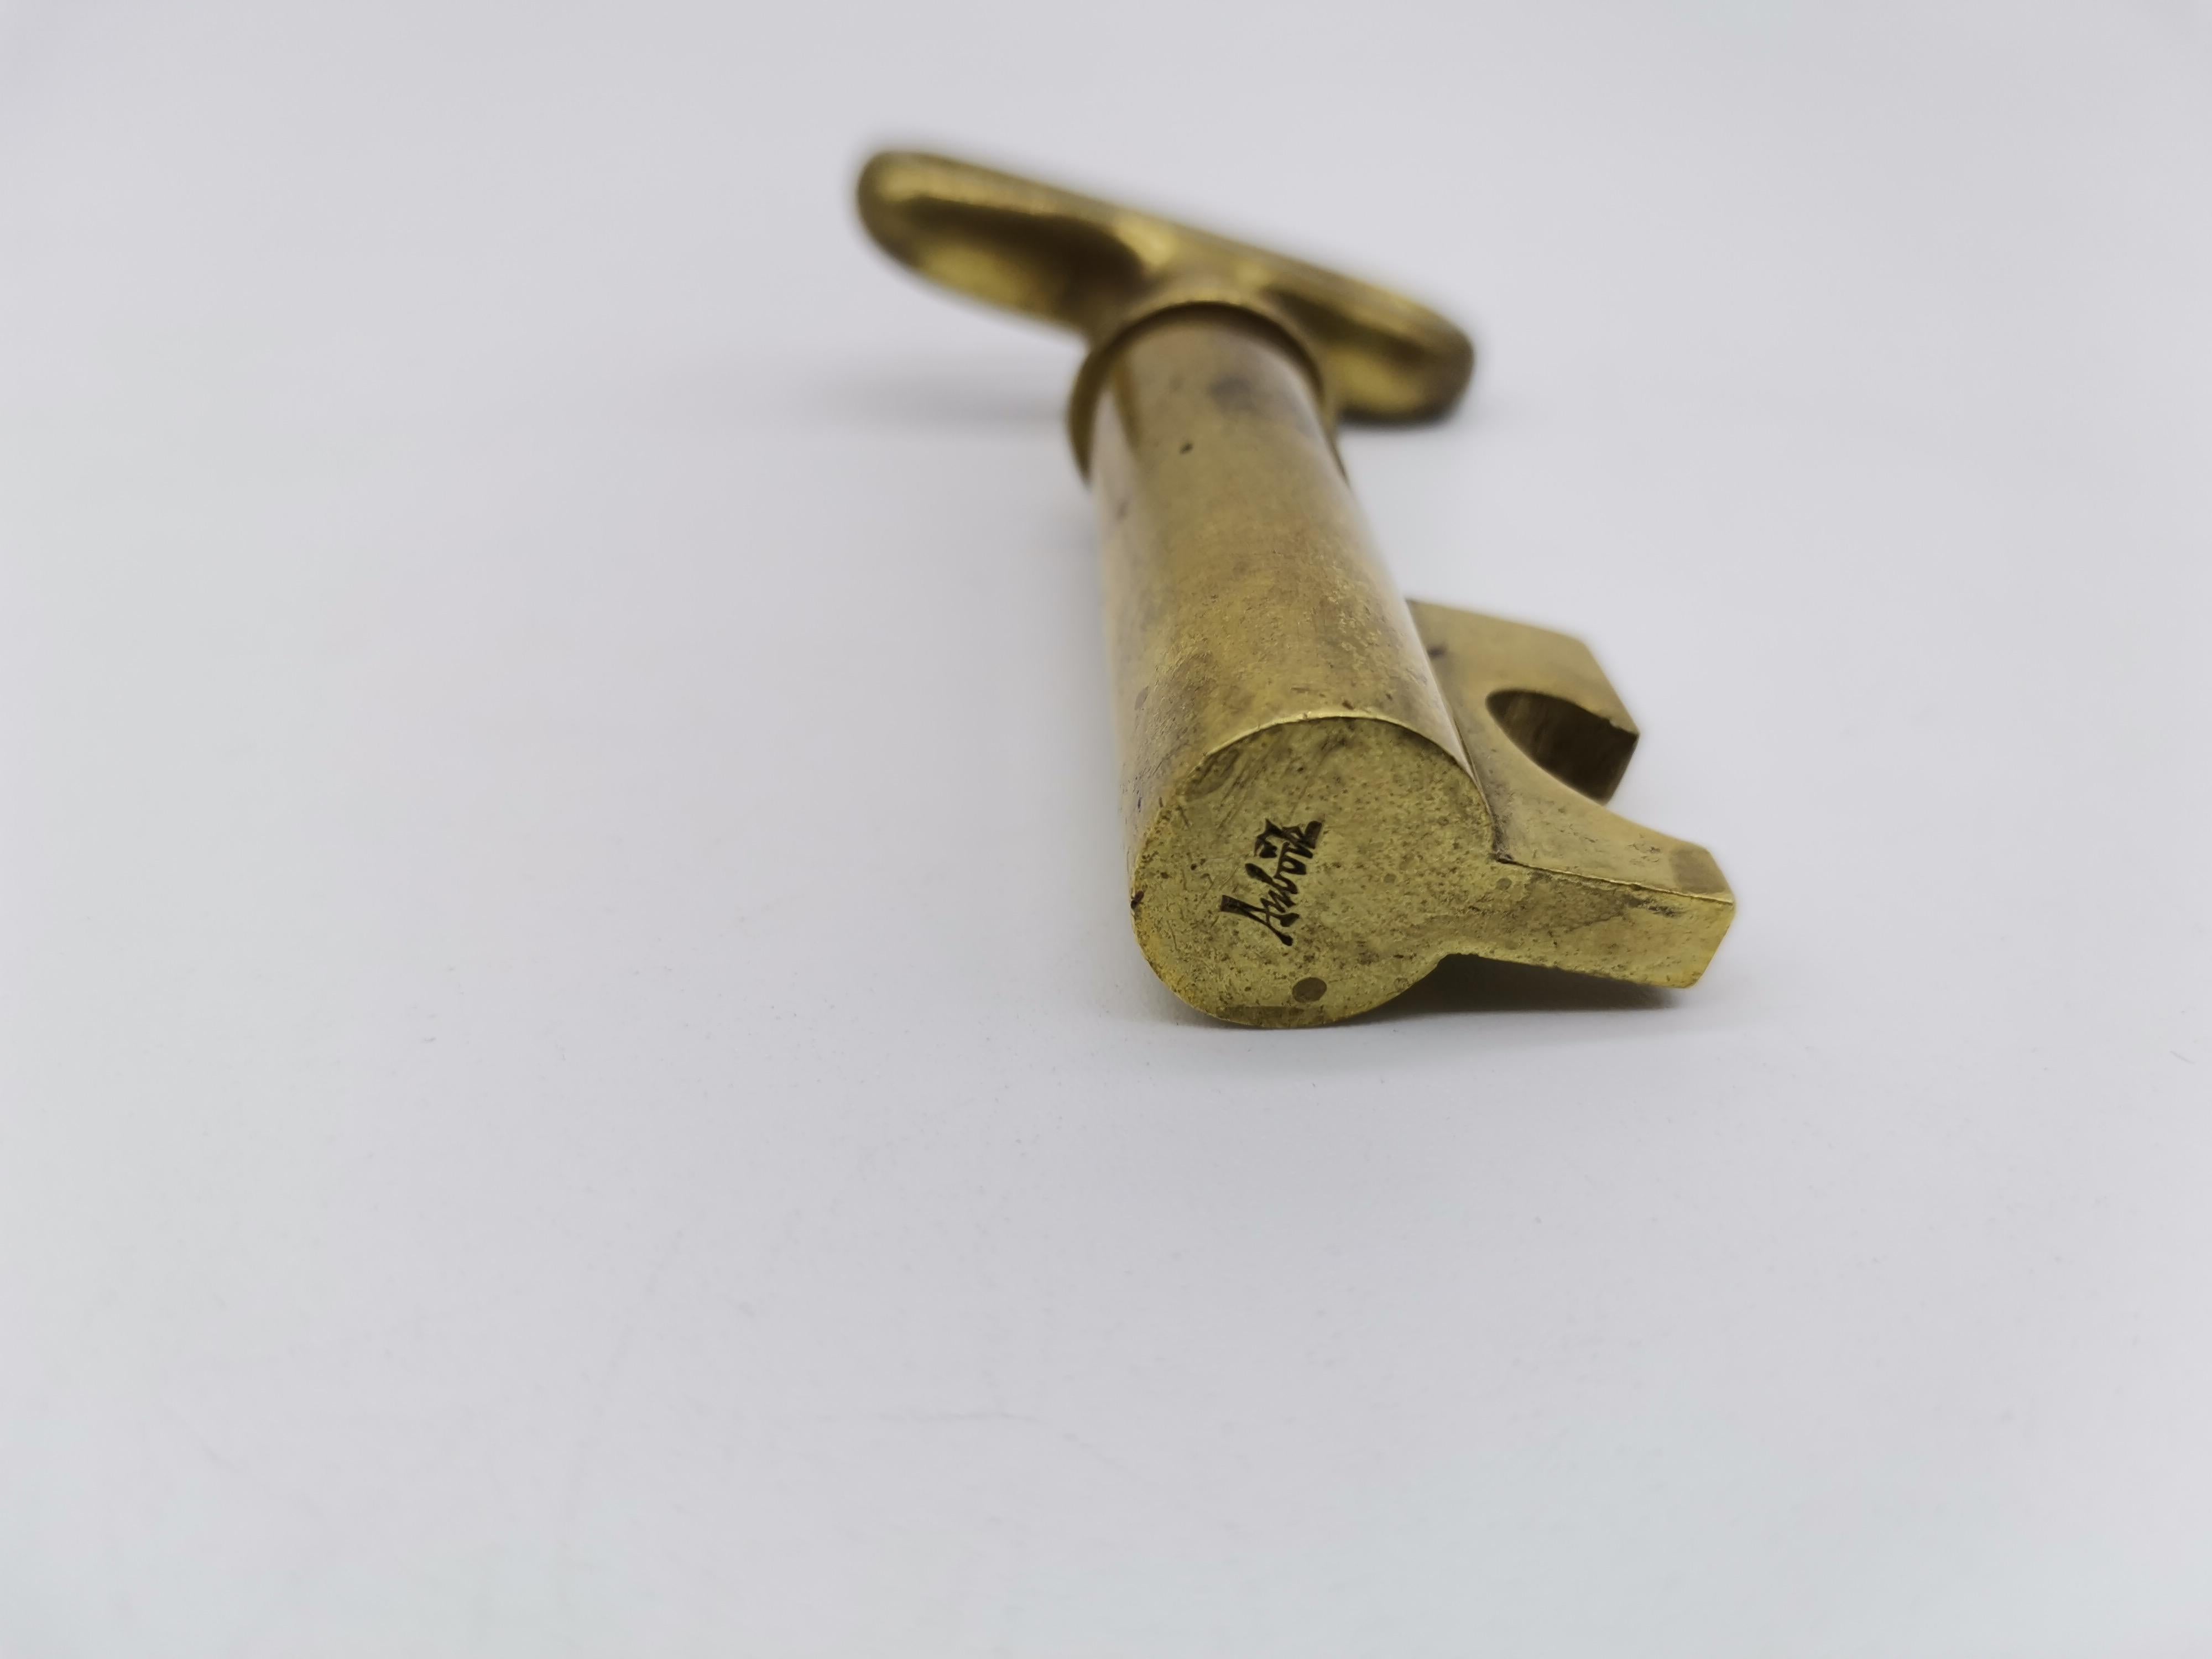 A cork screw made of brass in shape on a key by Carl Auböck.